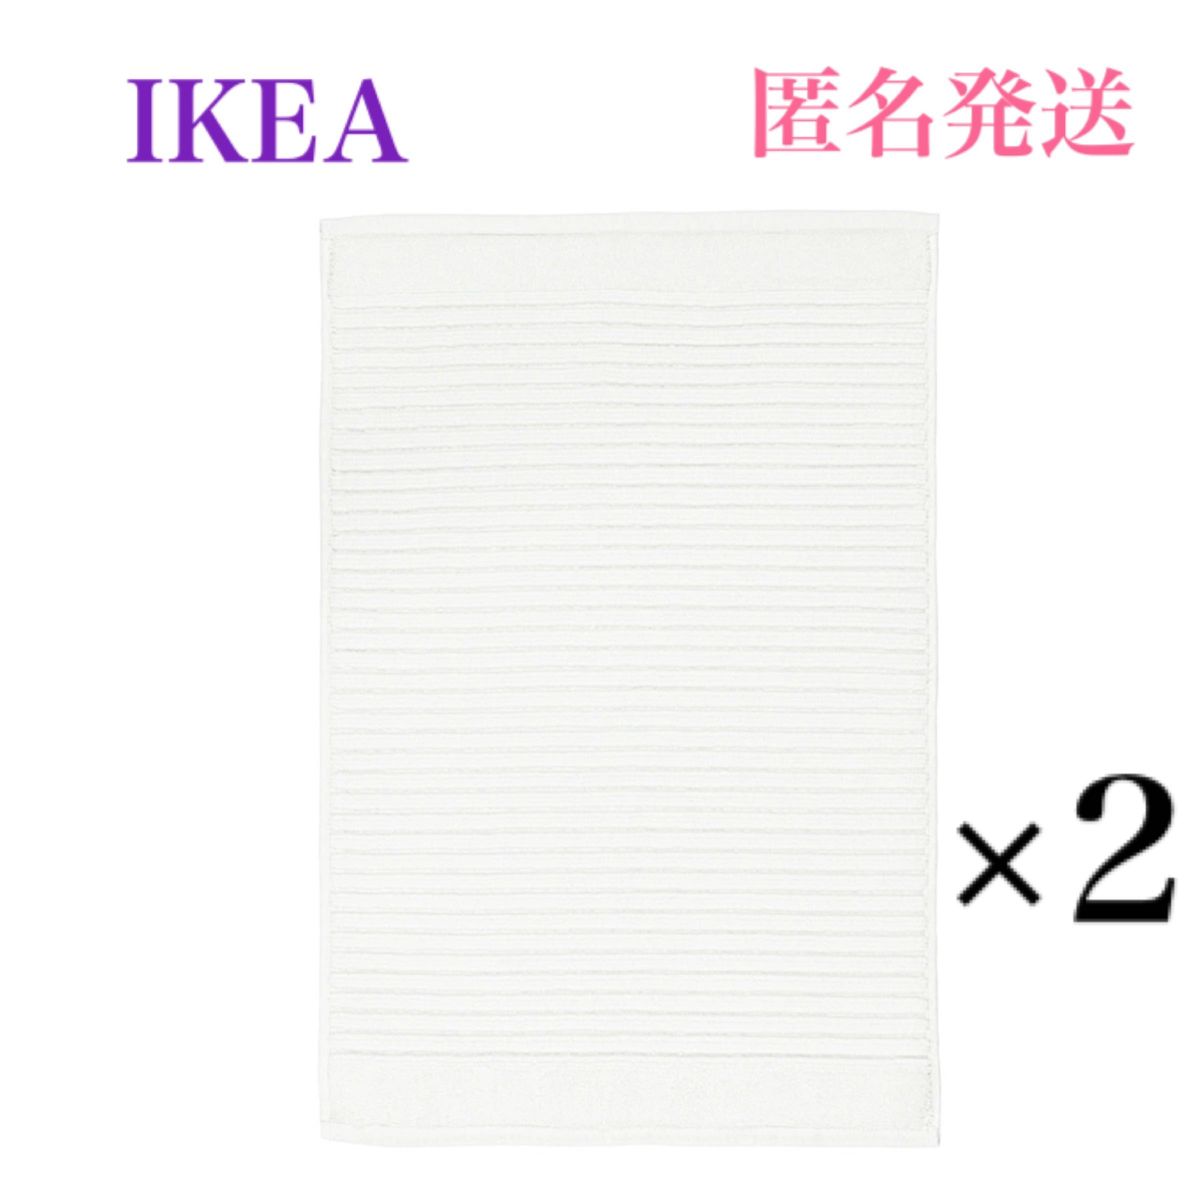 【新品・未使用】 イケア IKEA アルステルン バスマット ホワイト 2枚セット♪ ふわふわ柔らかバスマットです♪